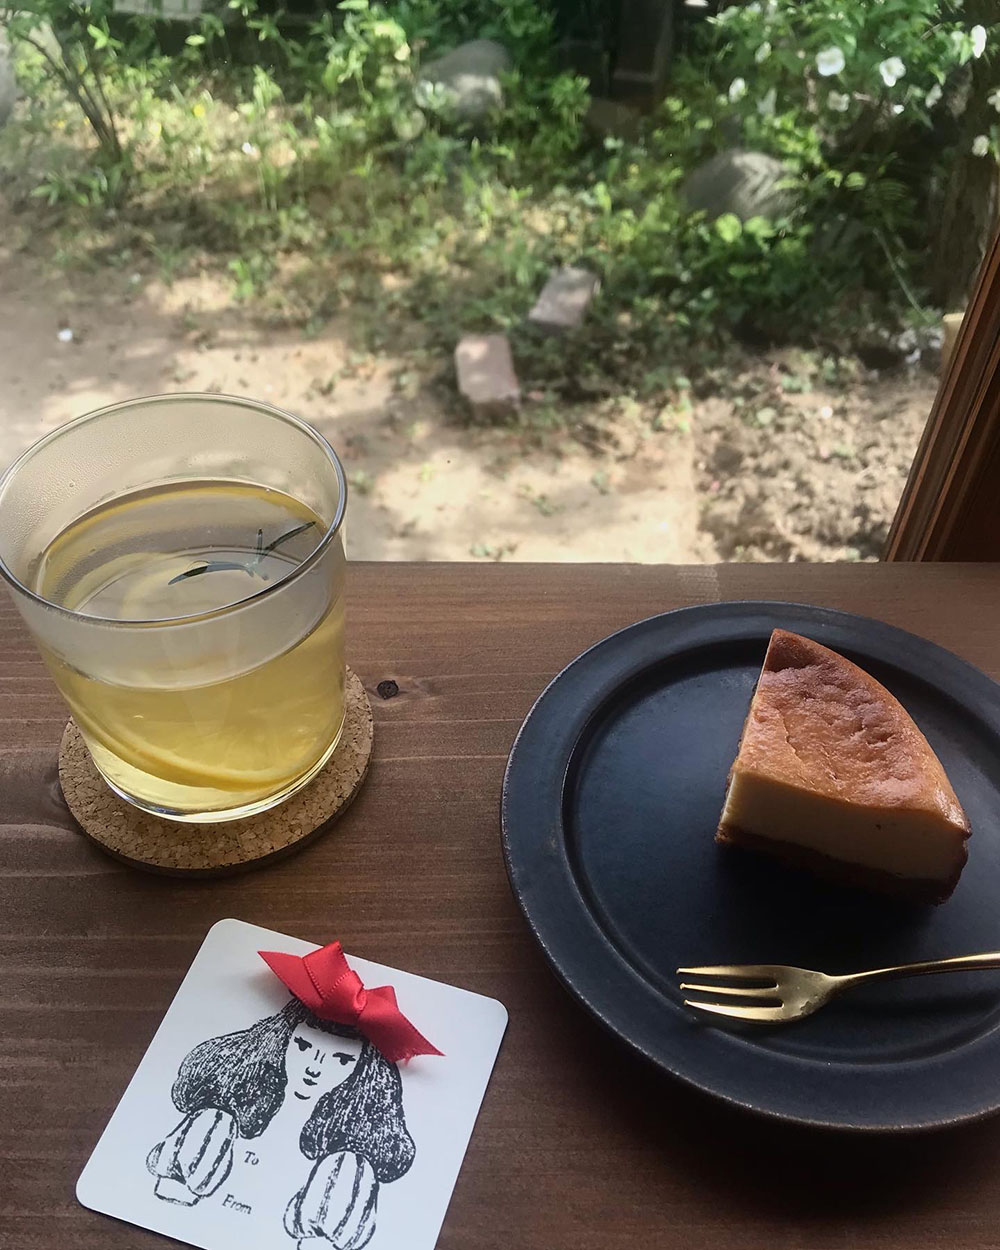 【カフェ巡り日記】カルダモンとチーズケーキとパンク。